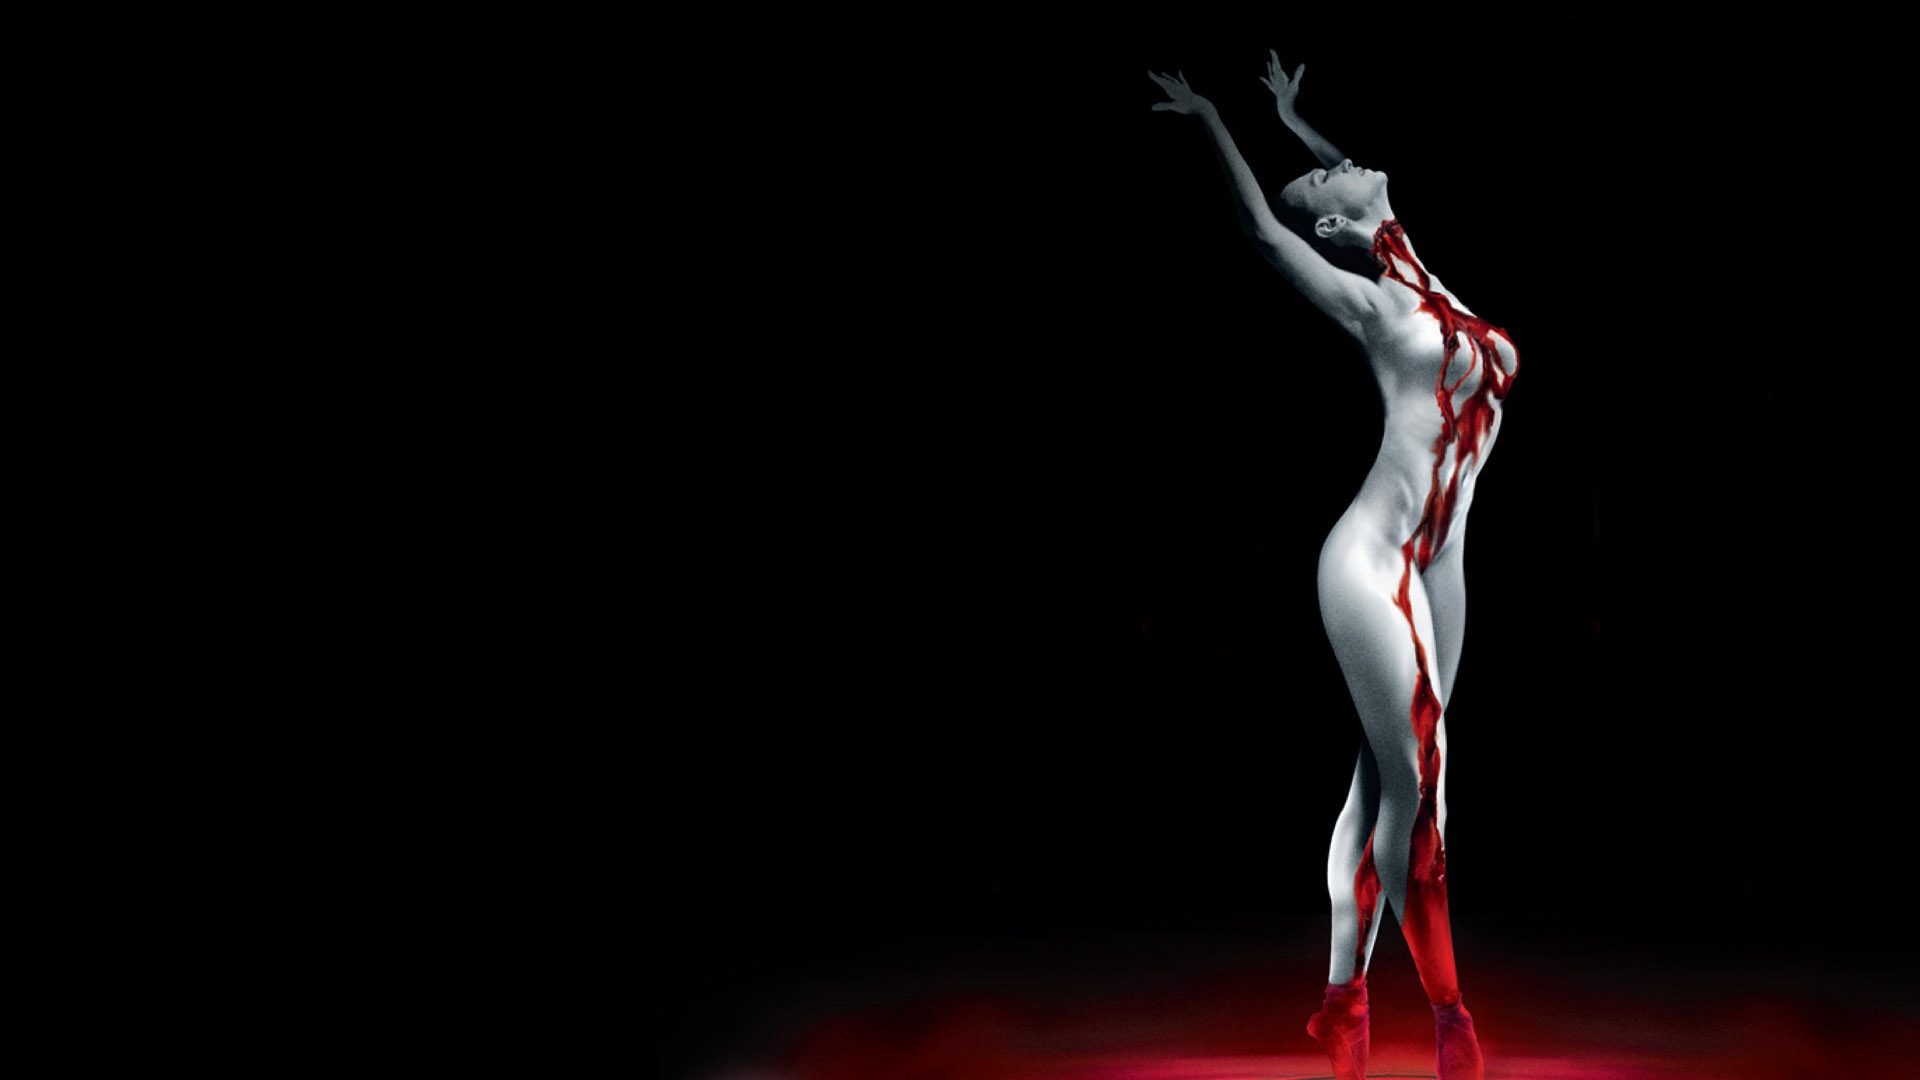 Bloody Dancer, A Wallpaper Of A Bloody Ballet Dancer - Suspiria Ballet , HD Wallpaper & Backgrounds